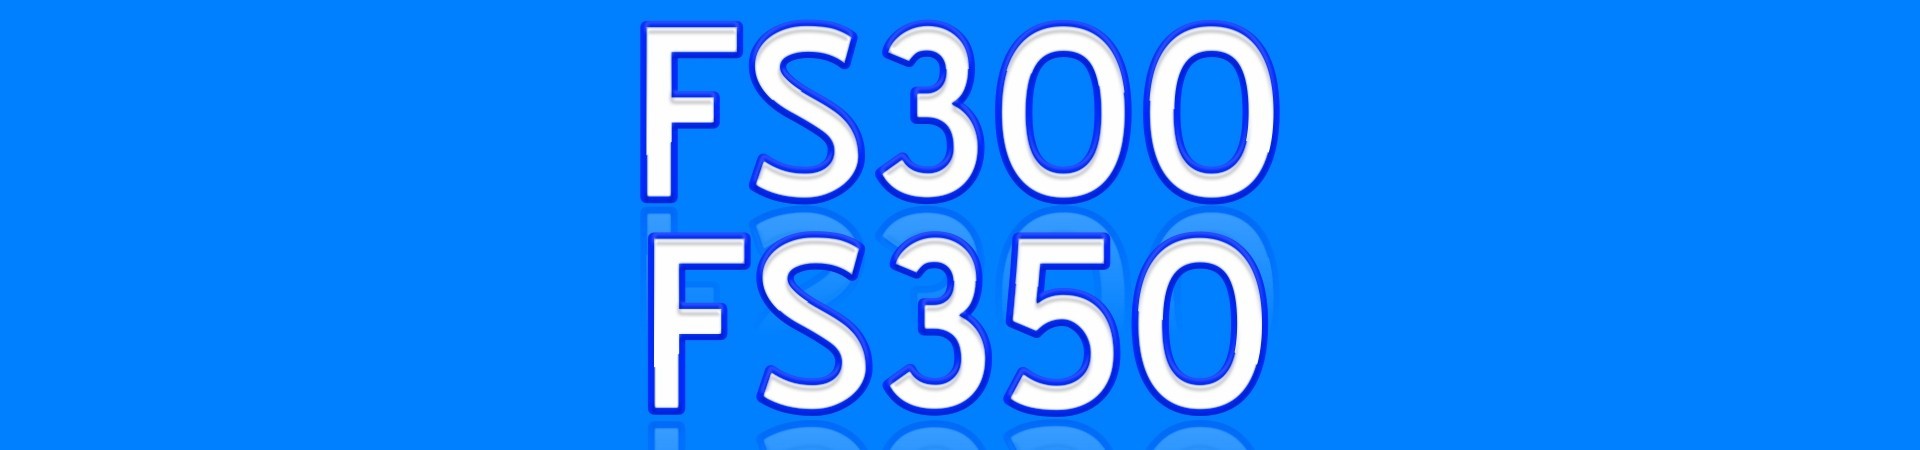 FS300 FS350